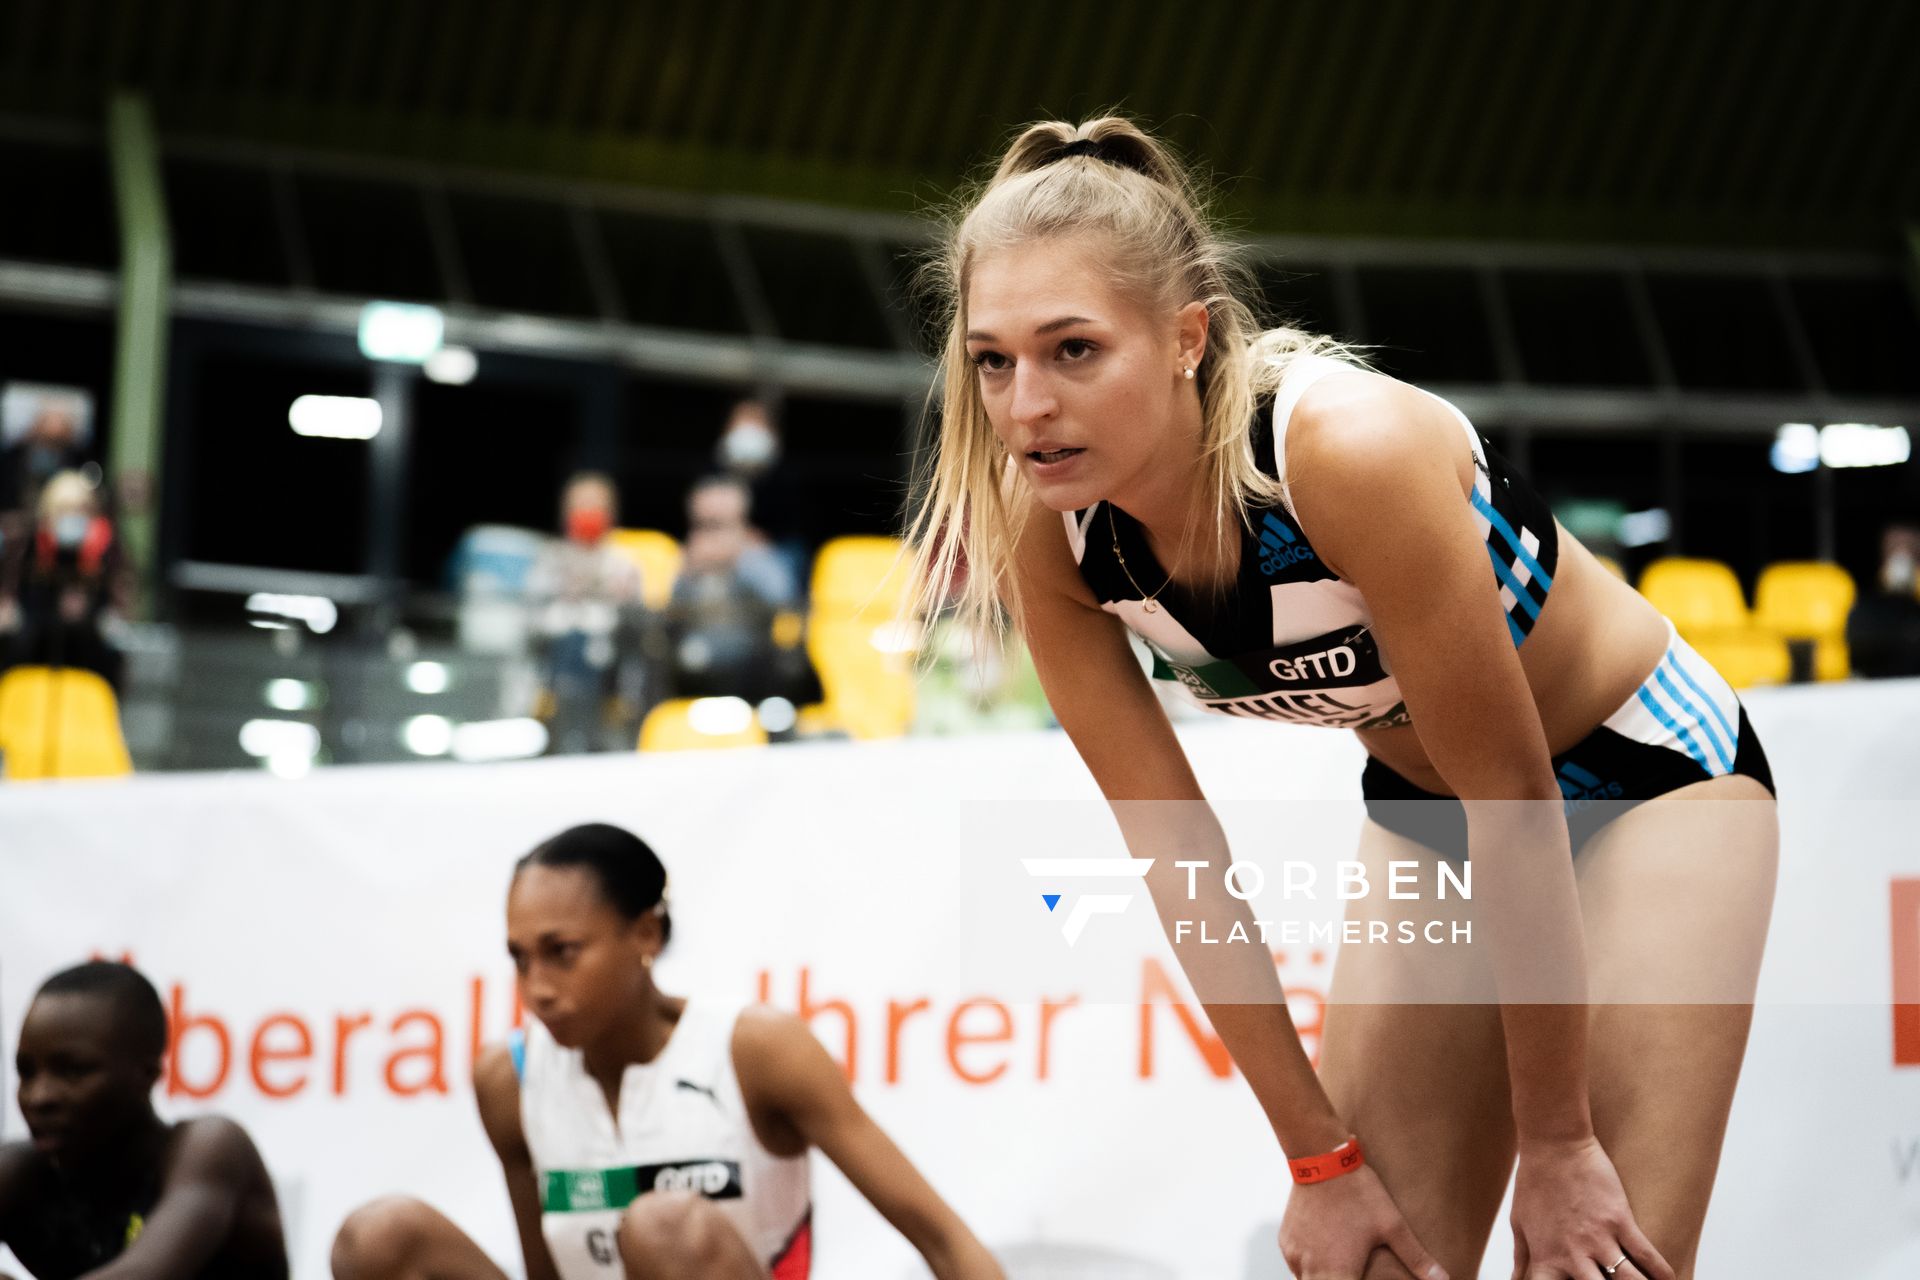 Luna Thiel (VfL Eintracht Hannover) wartet auf ihre Zeit ueber 400m am 12.02.2022 beim PSD Bank Indoor Meeting in der Helmut-Körnig-Halle in Dortmund